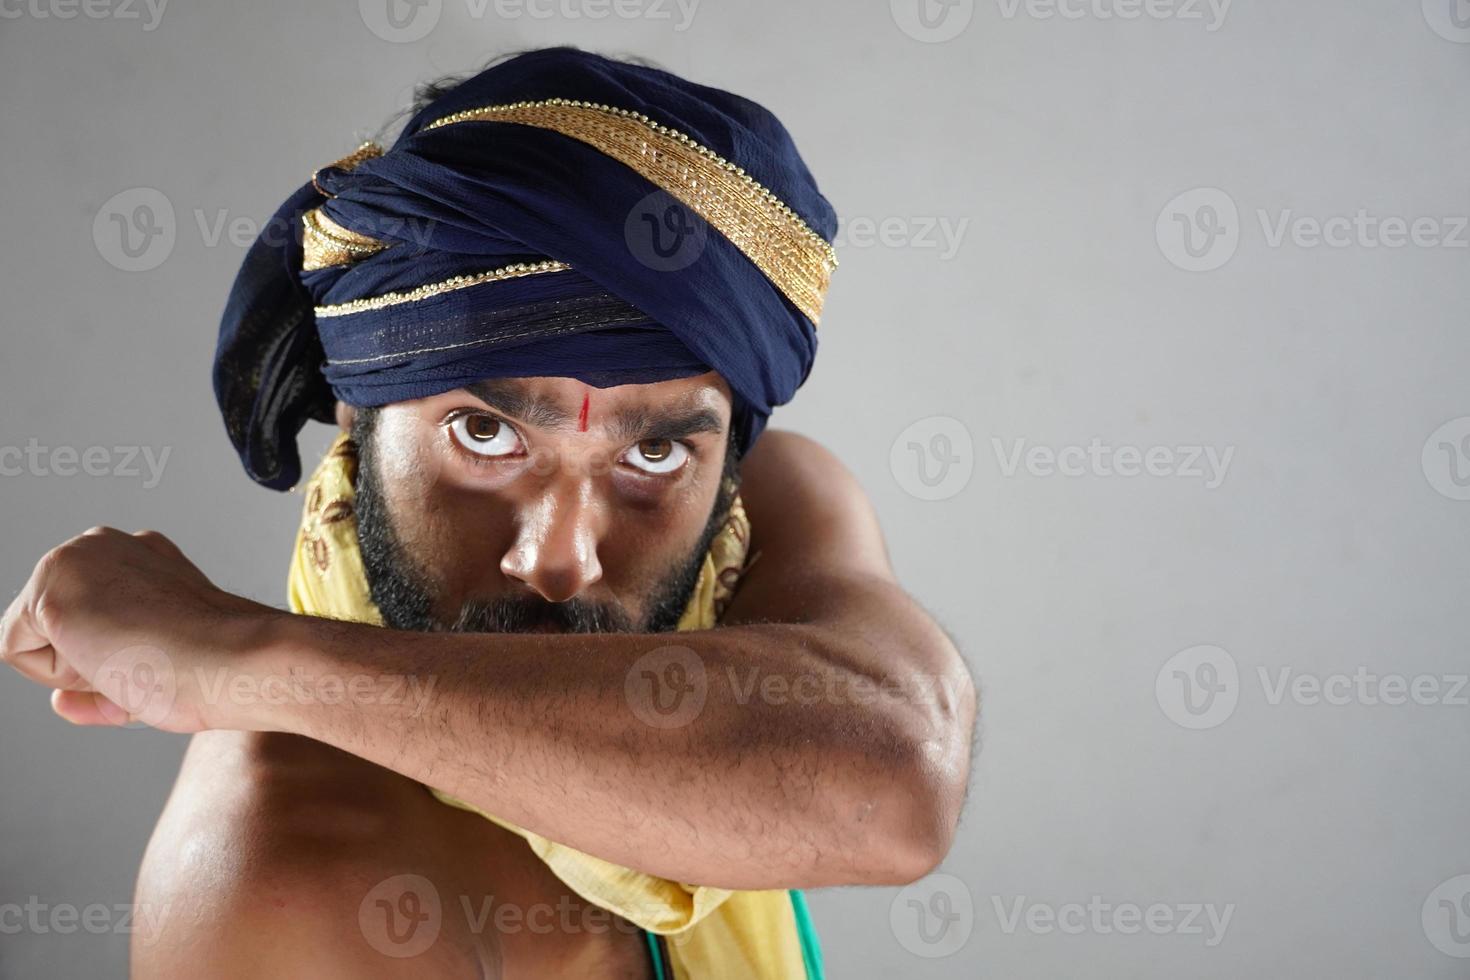 viendo imágenes de reyes muy enojados - hombre indio en el teatro actuando como un rey foto